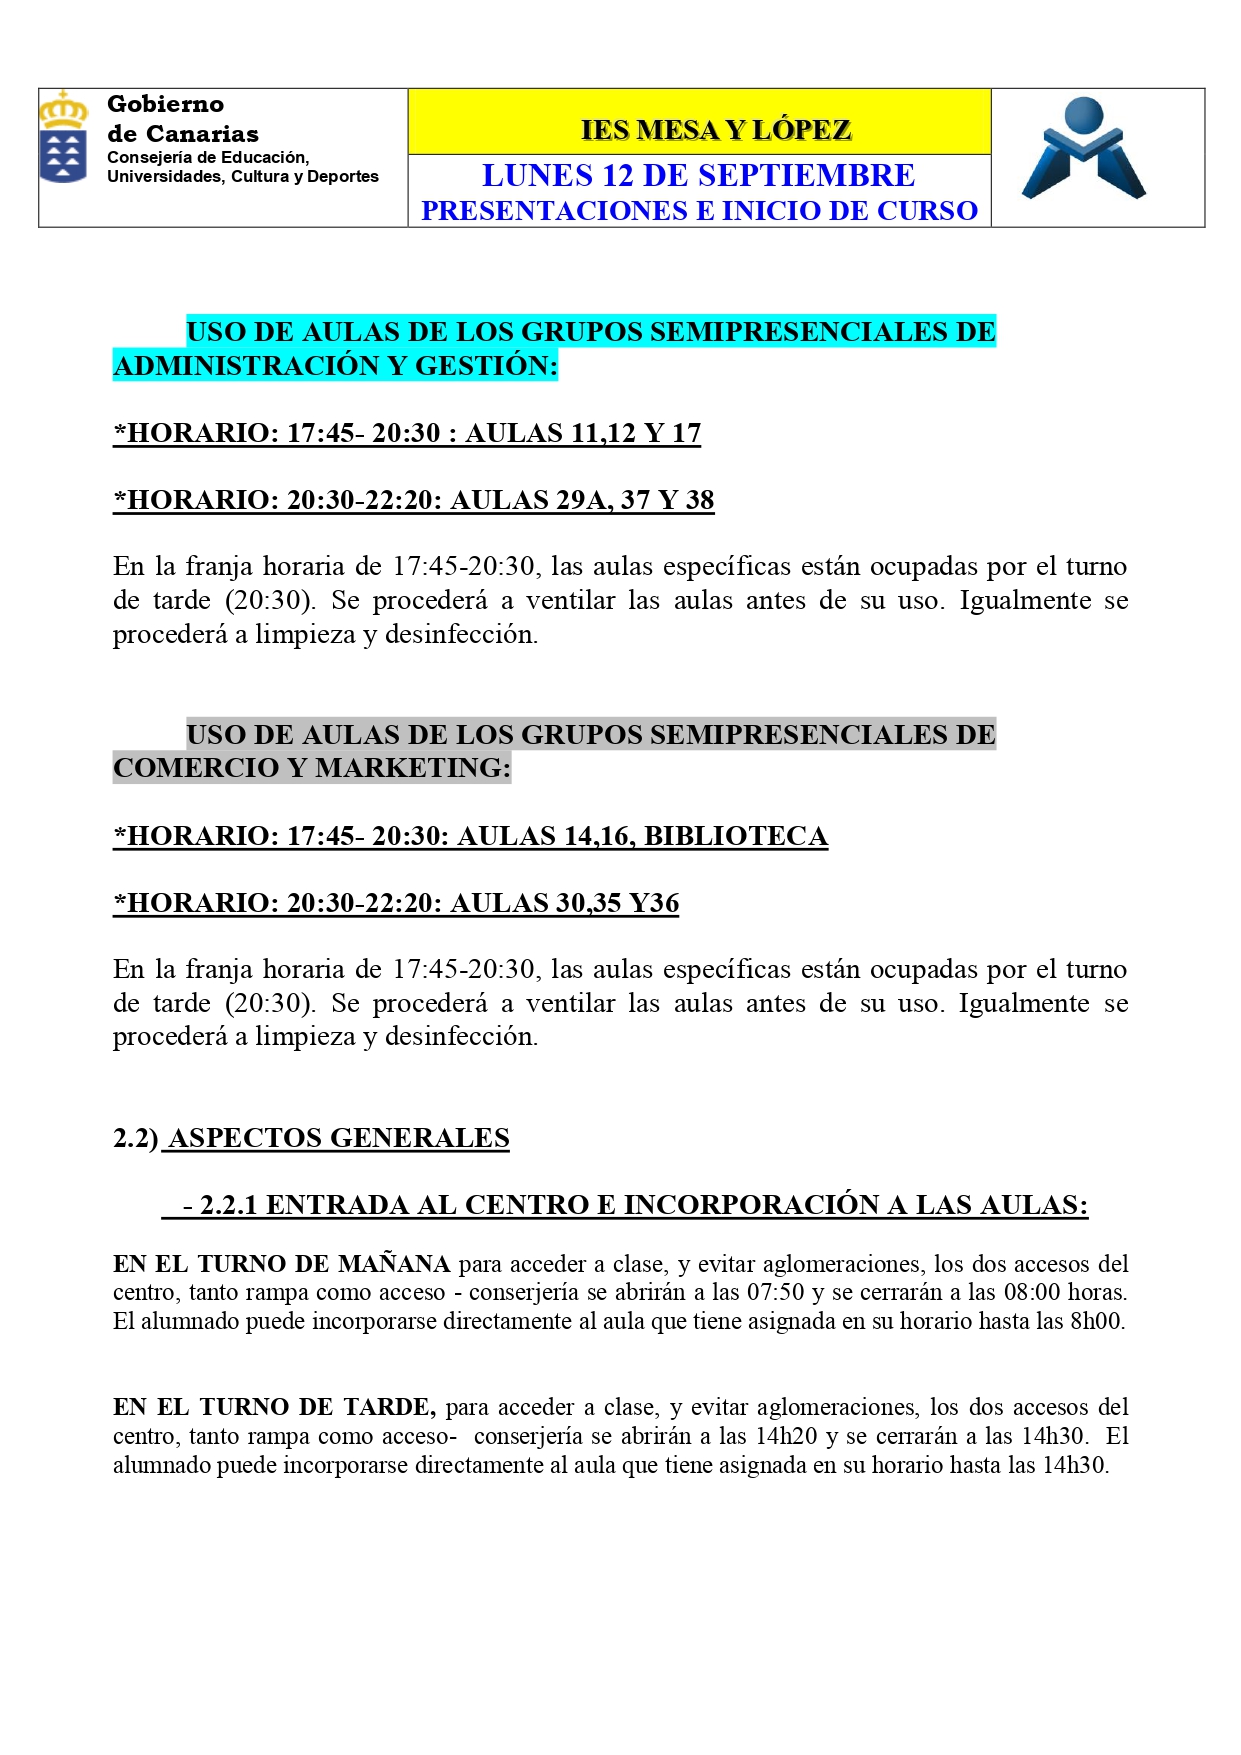 PRESENTACIONES E INICIO DE CLASES 12 SEPTIEMBRE page 0008